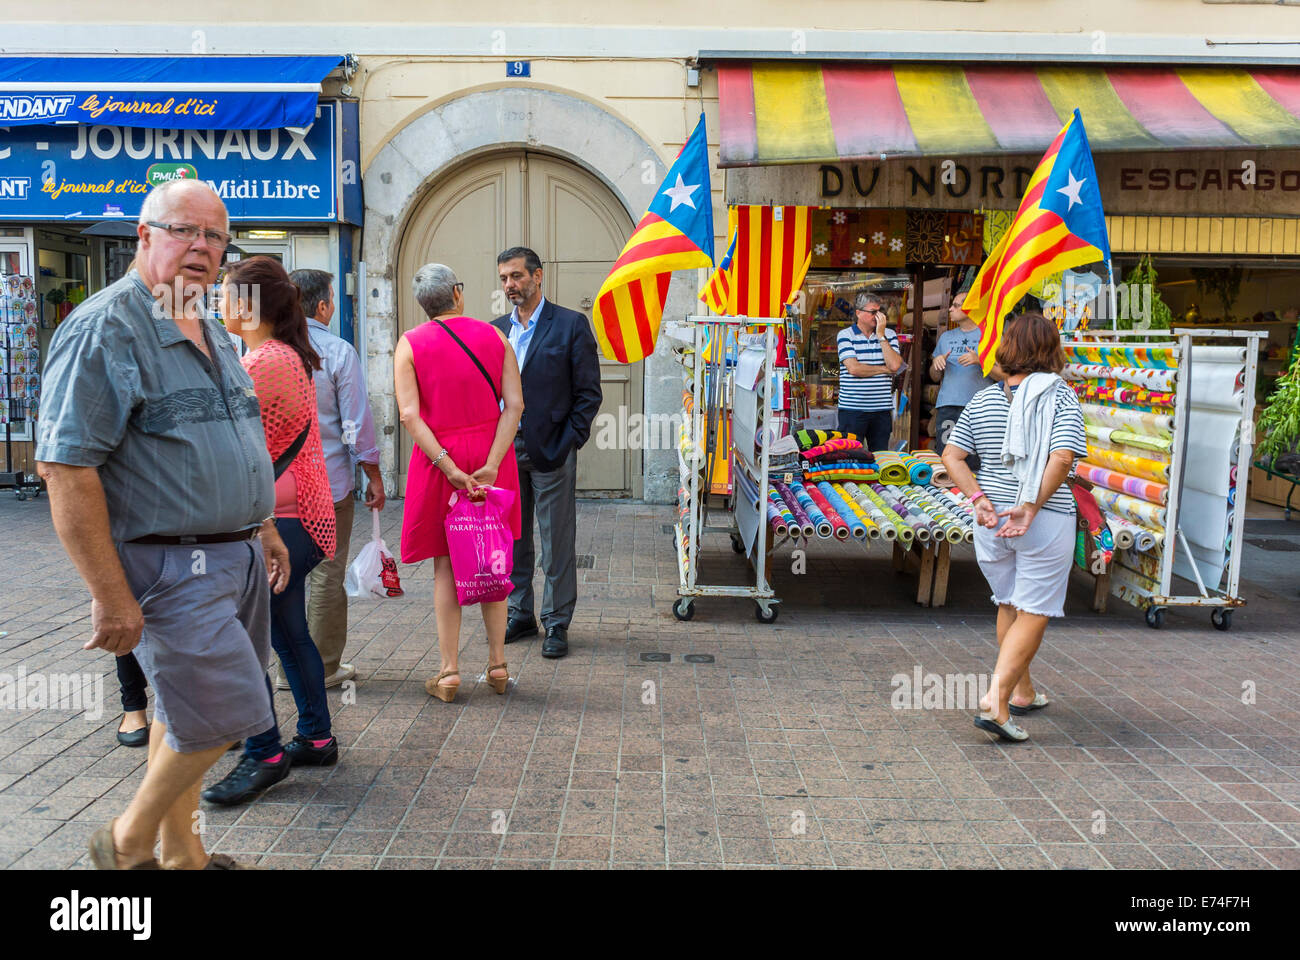 Perpignan, France, scènes de rue, des gens parler sur Town Square, devantures, Drapeau Catalogne Local Banque D'Images